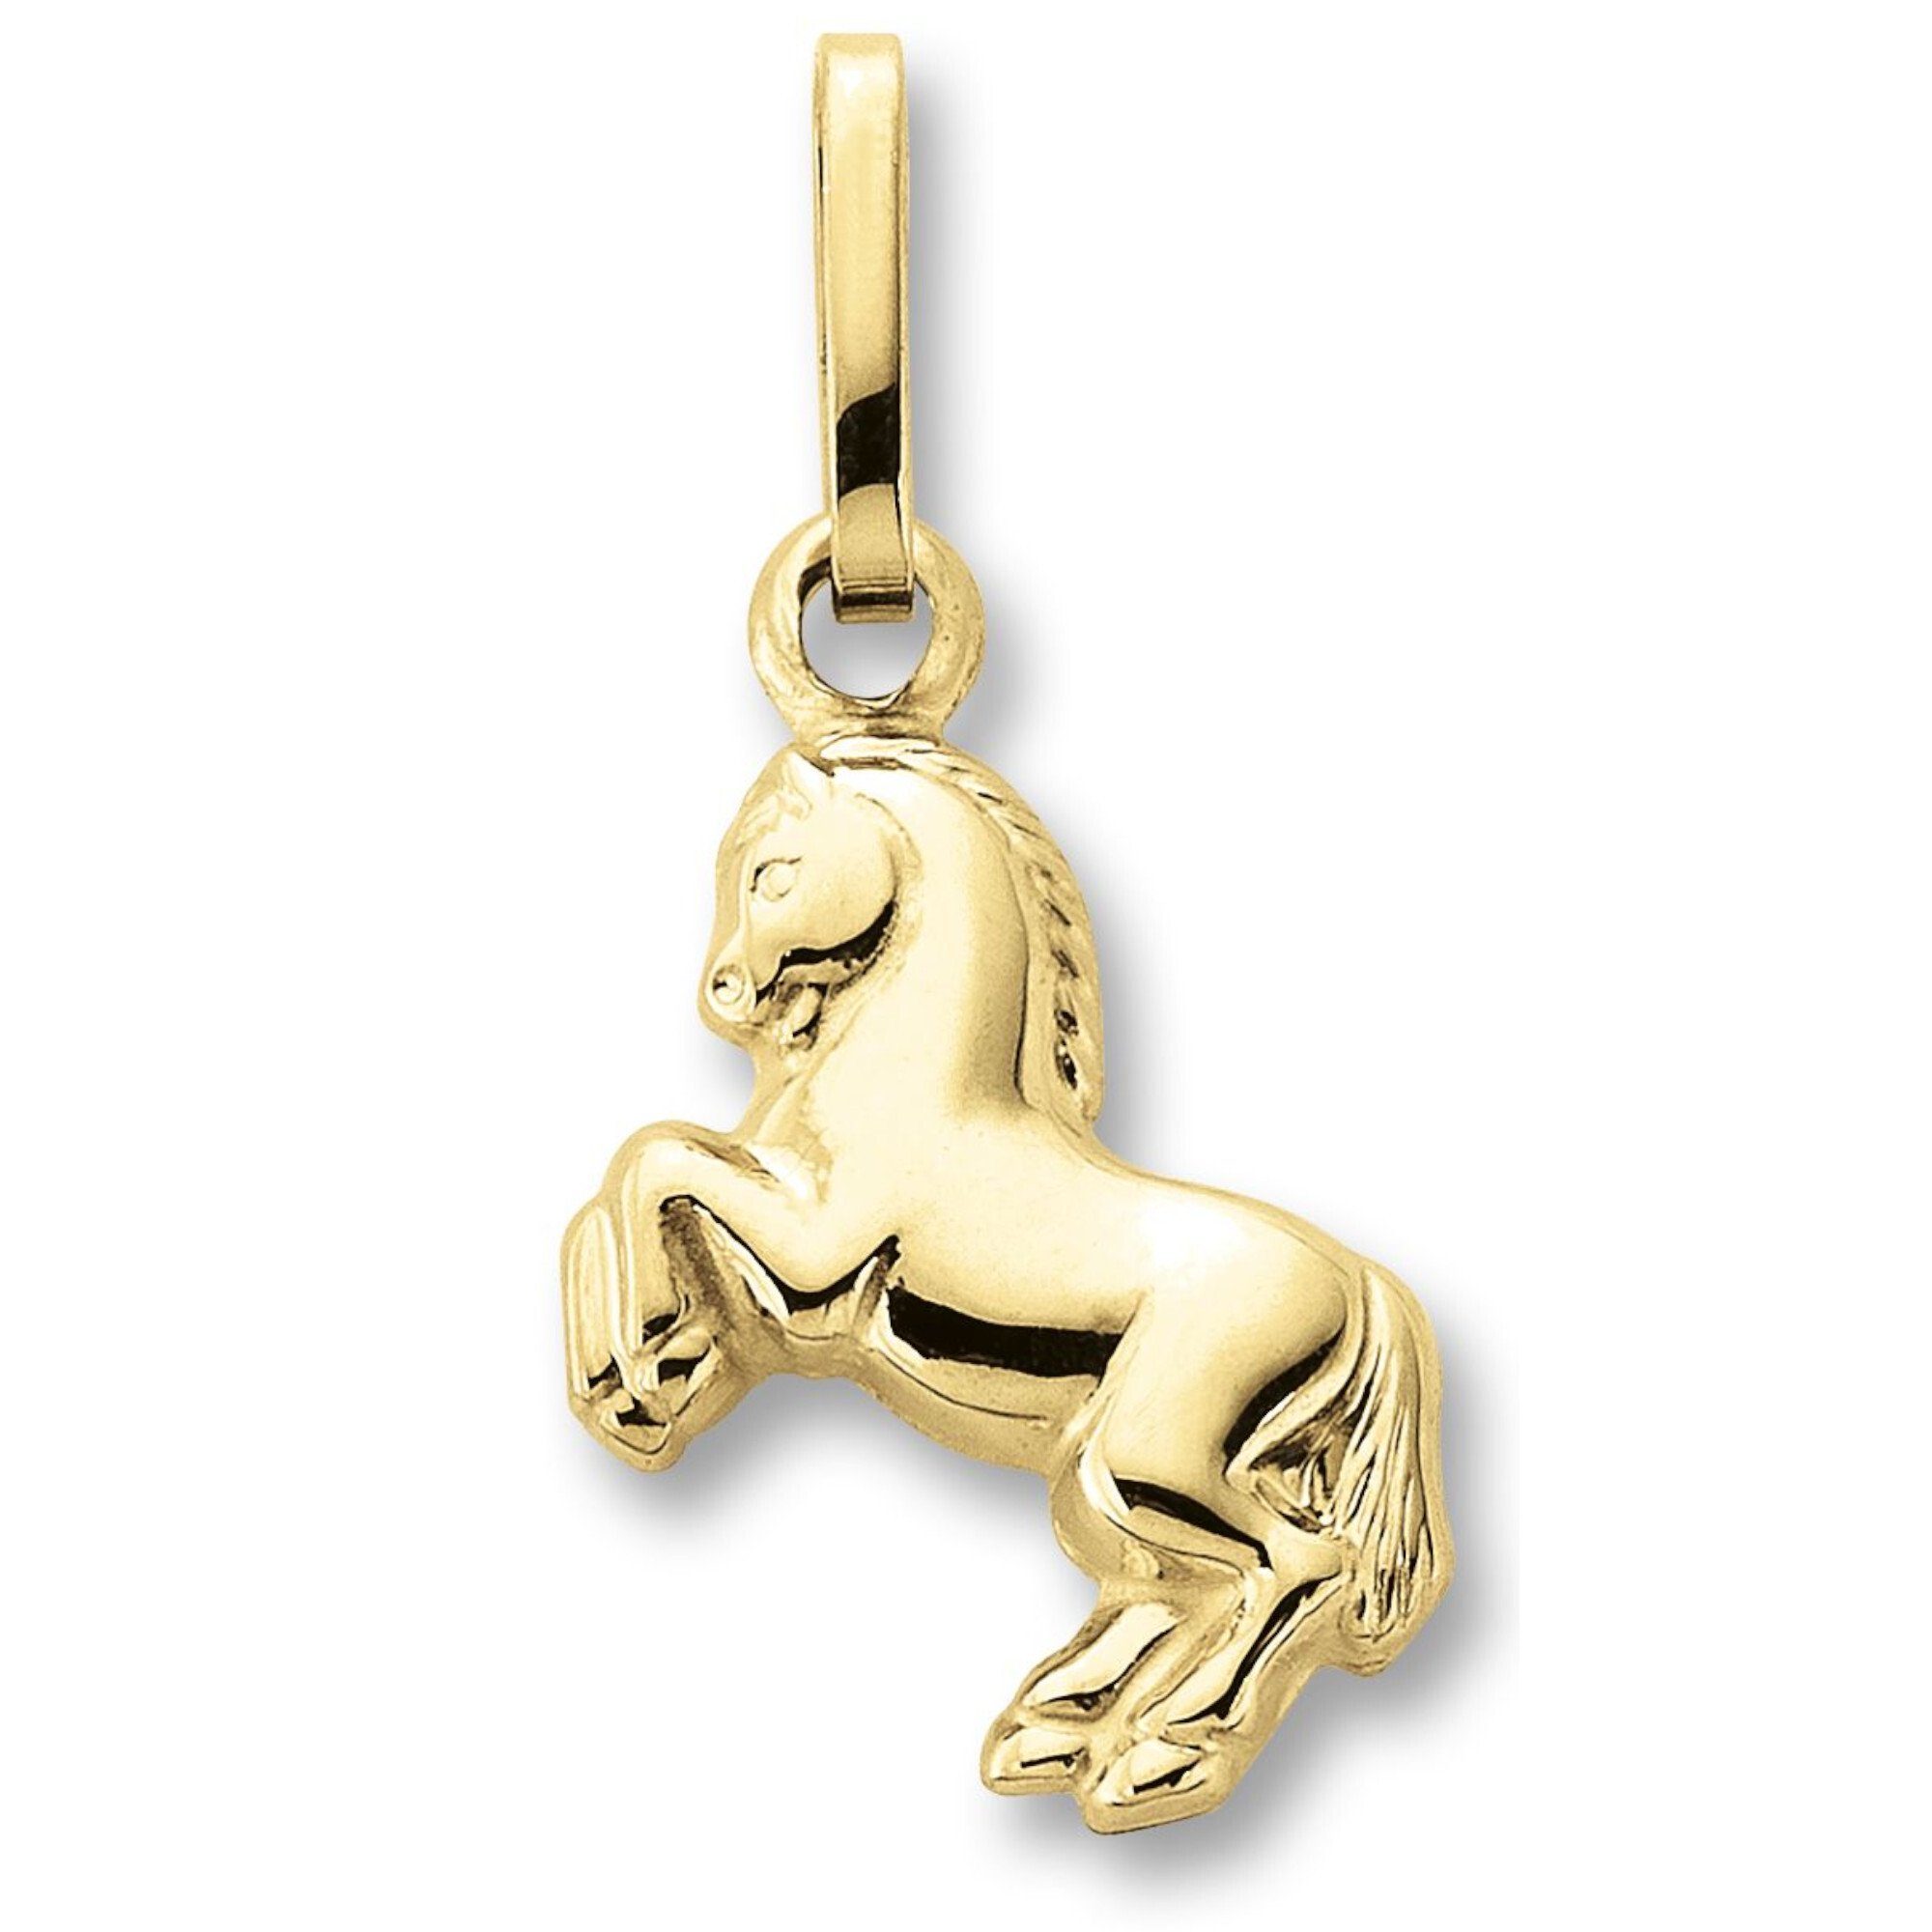 ONE ELEMENT Kettenanhänger Pferd Anhänger aus 333 Gelbgold, Damen Gold  Schmuck Pferd, Verschluss : verlötete Öse (beweglich)